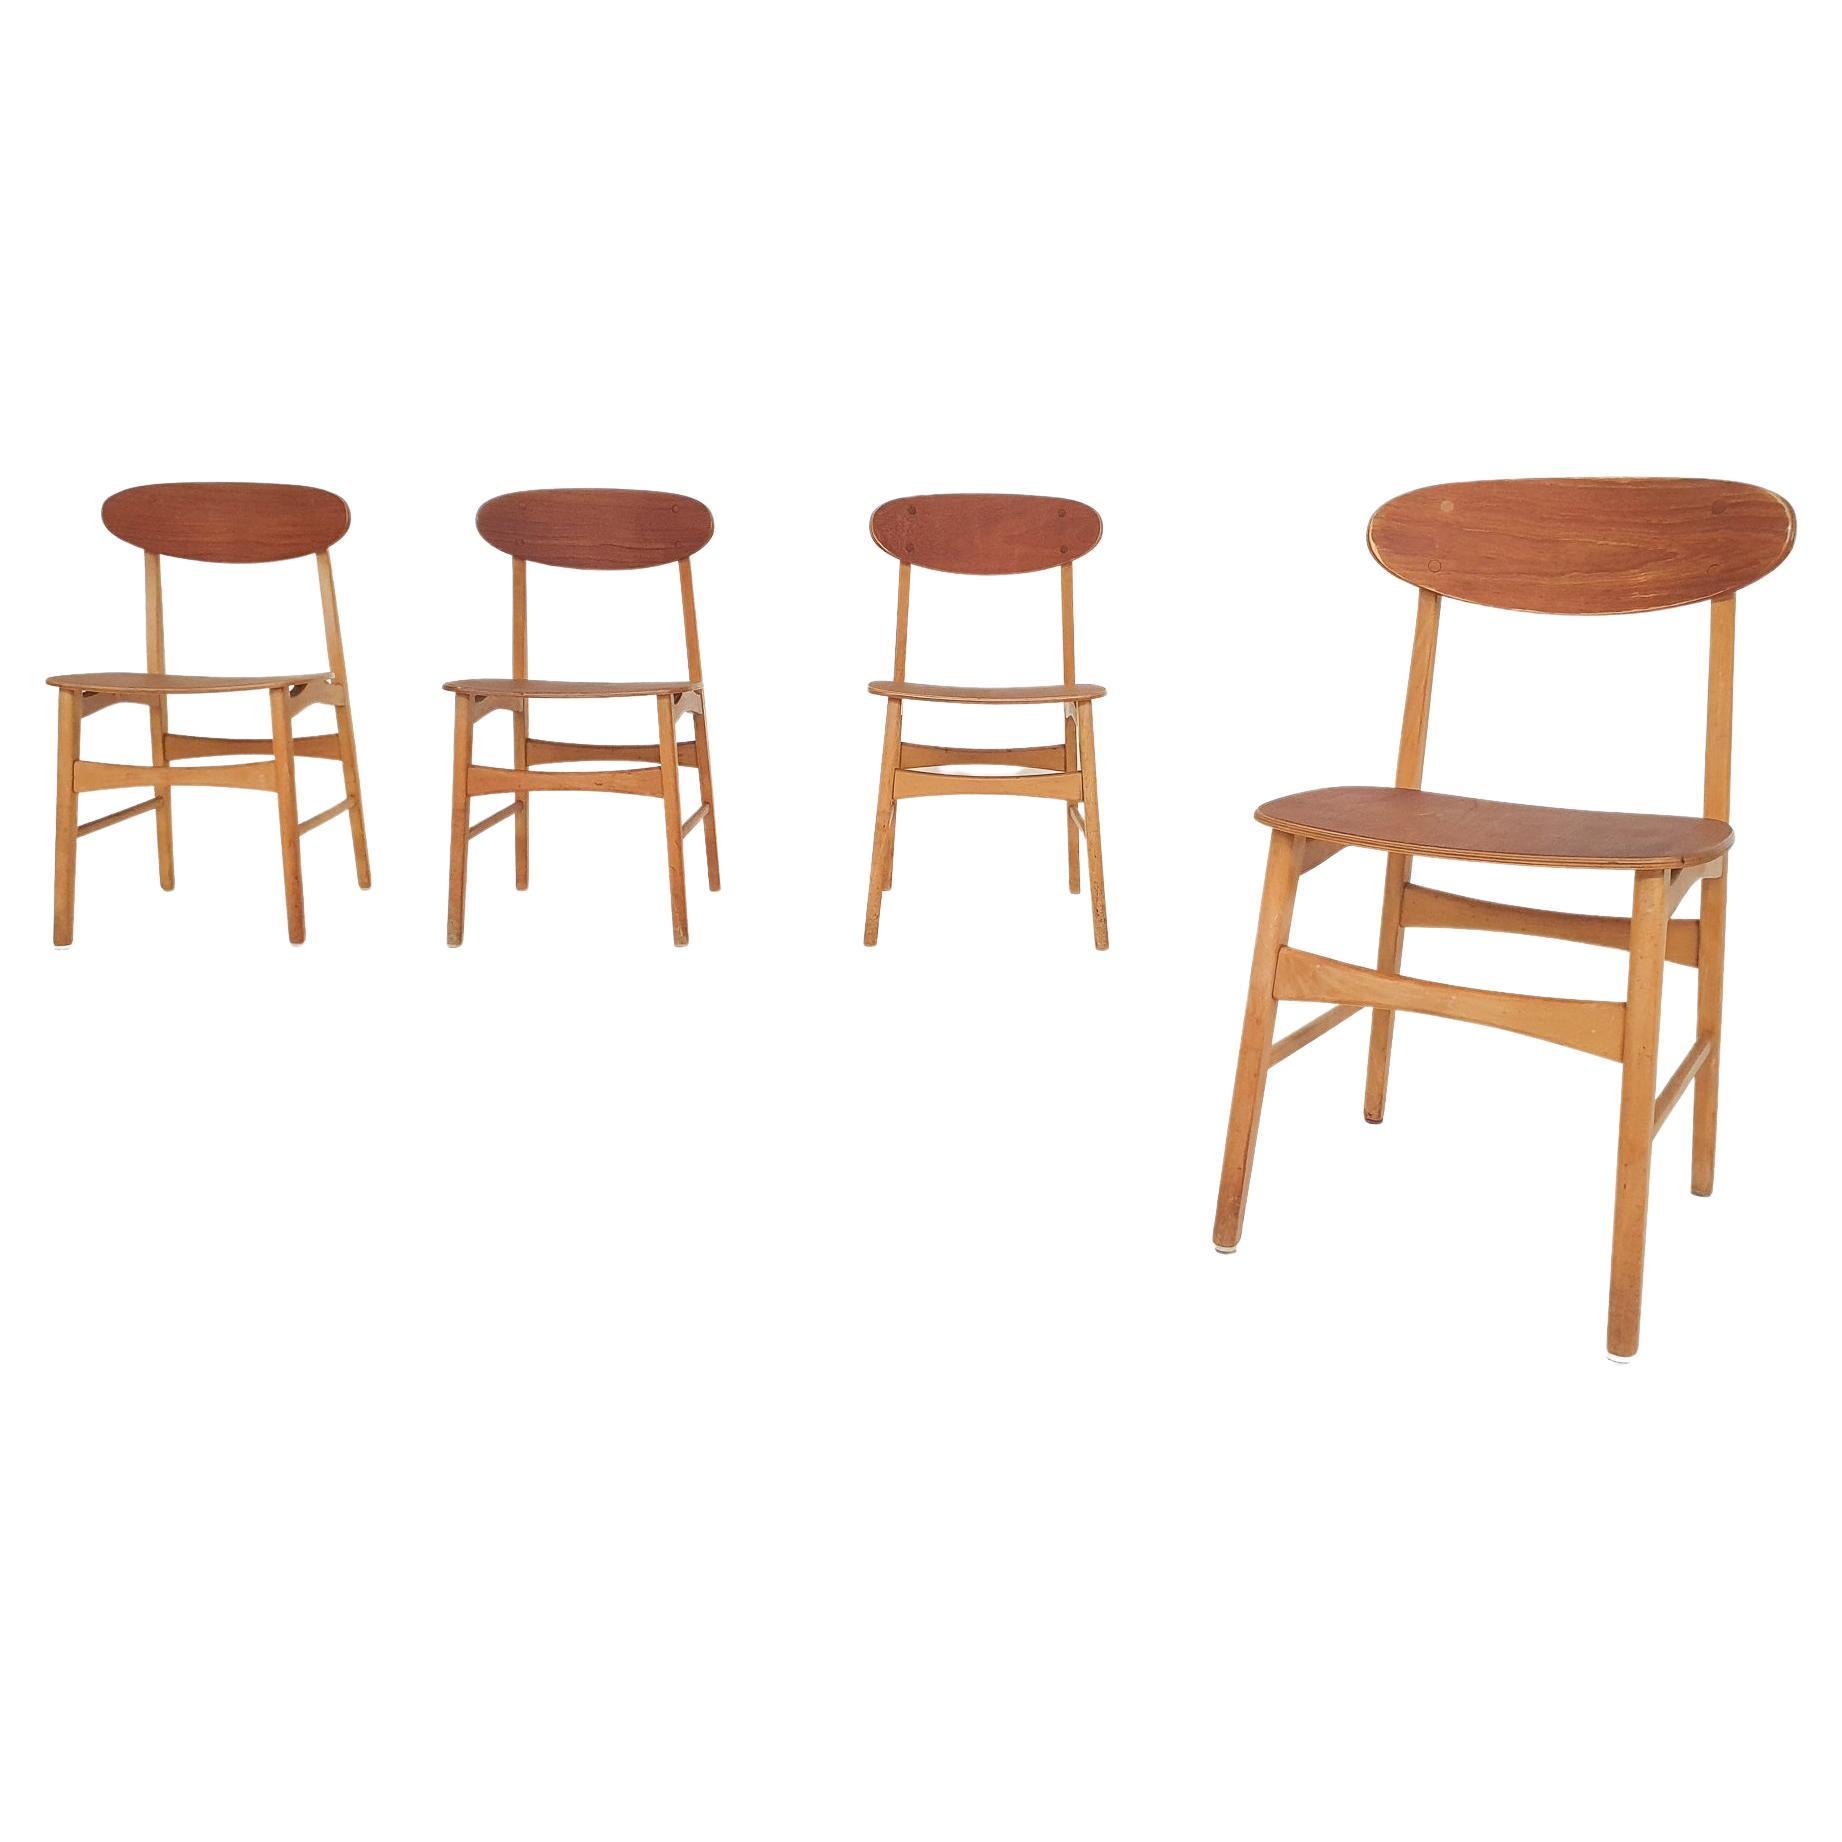 Vier Stühle aus Teak-Sperrholz, The Netherlands 1950's